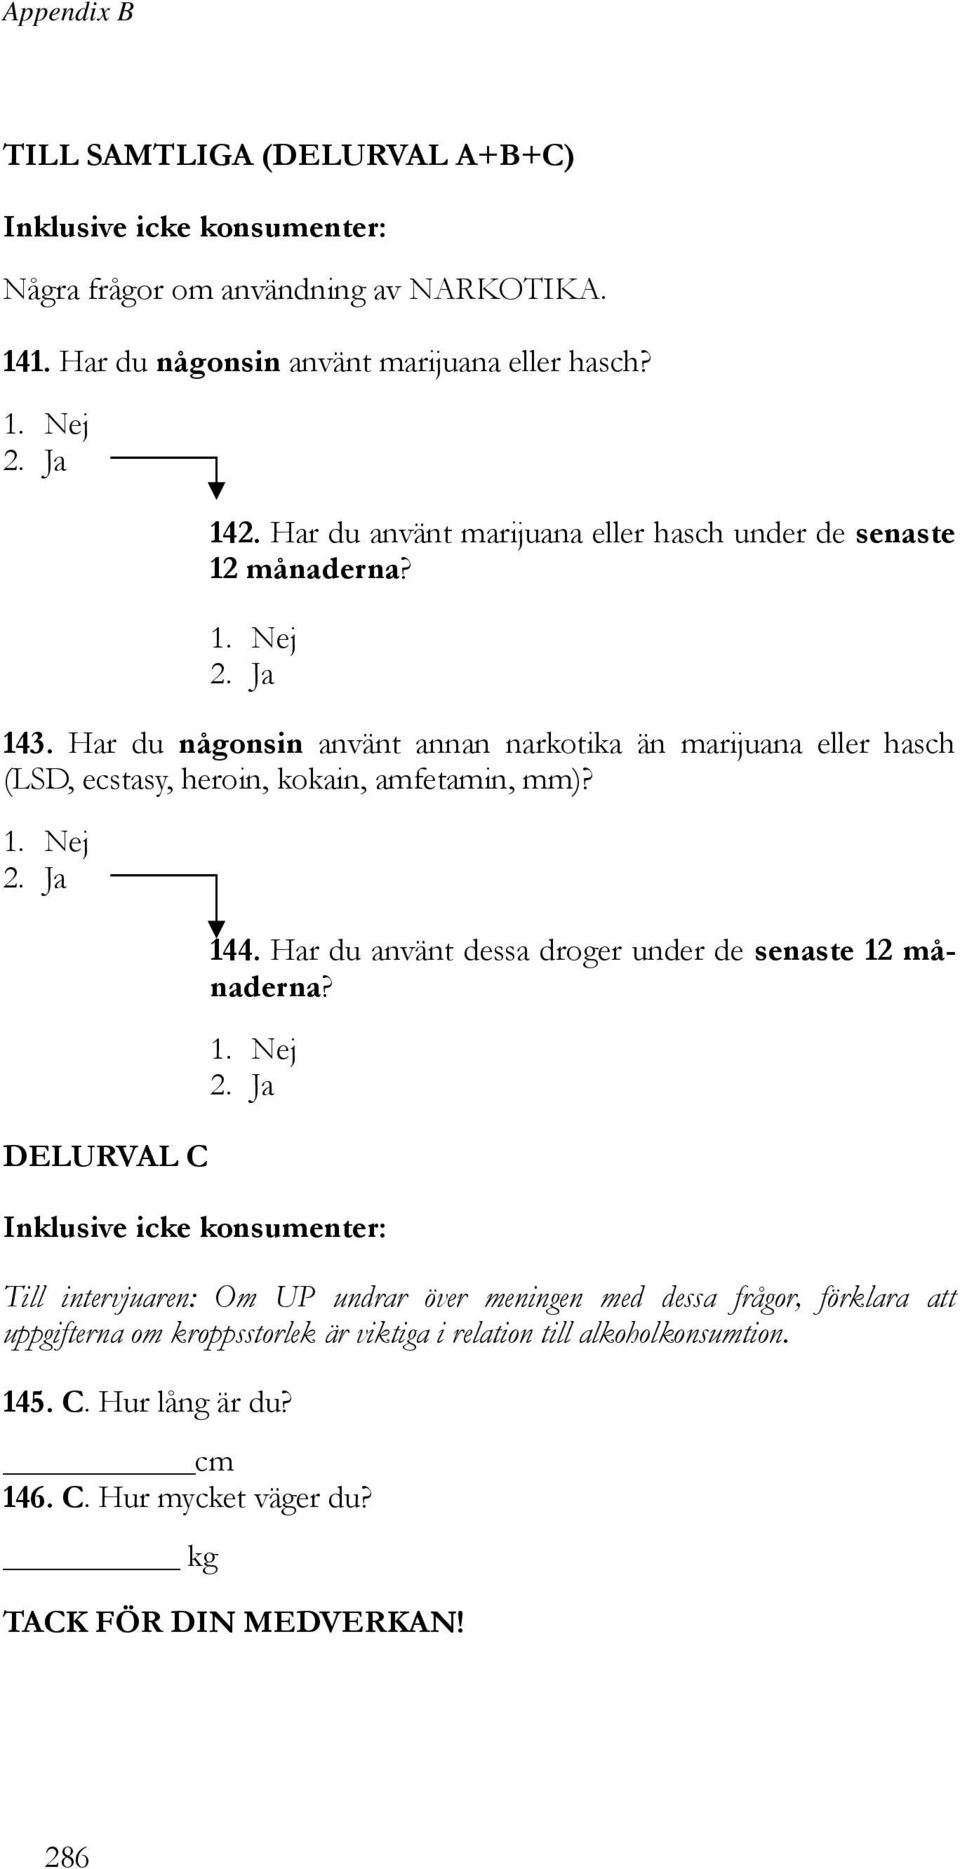 Har du någonsin använt annan narkotika än marijuana eller hasch (LSD, ecstasy, heroin, kokain, amfetamin, mm)? DELURVAL C 144.